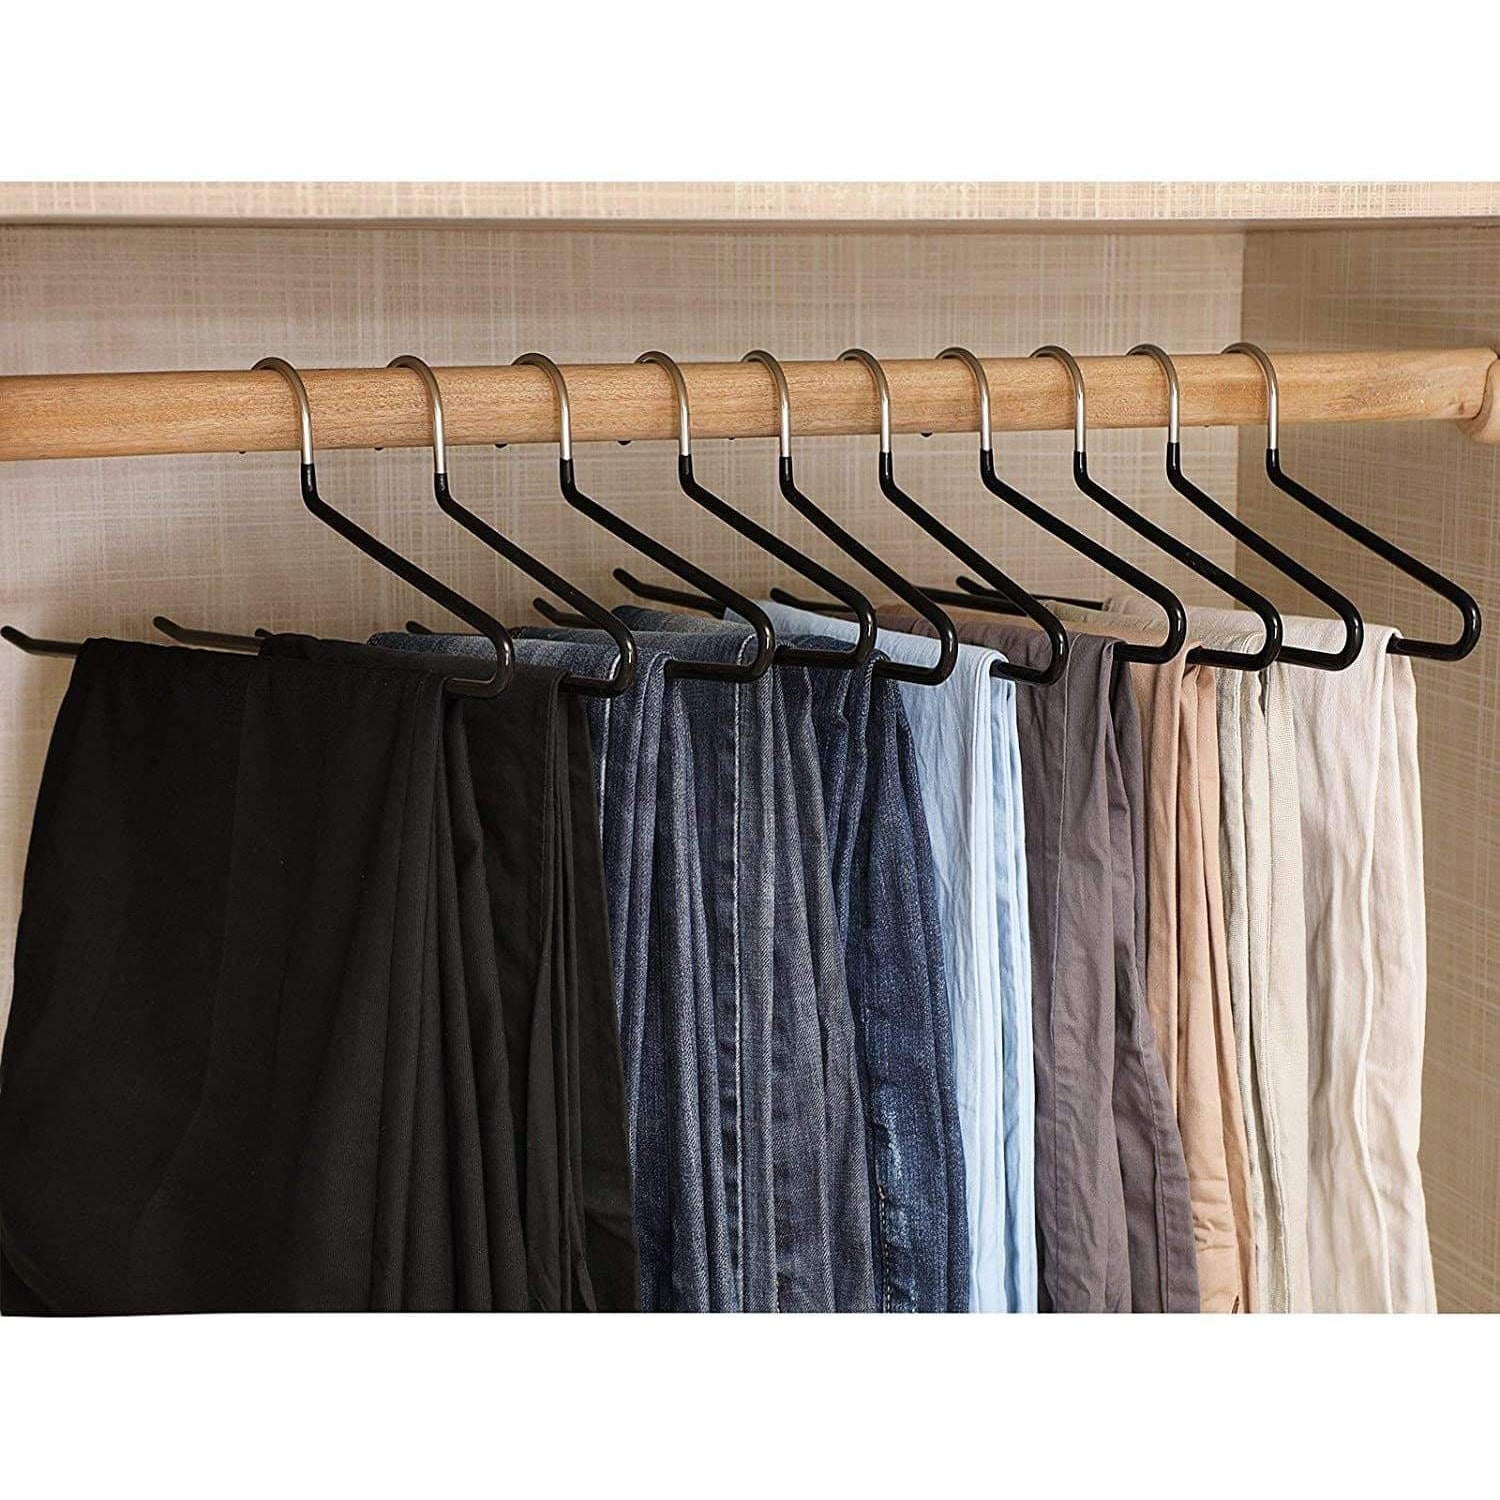 Nancy's Trouser Hanger 20 Pieces - Metal Black Clothes Hanger